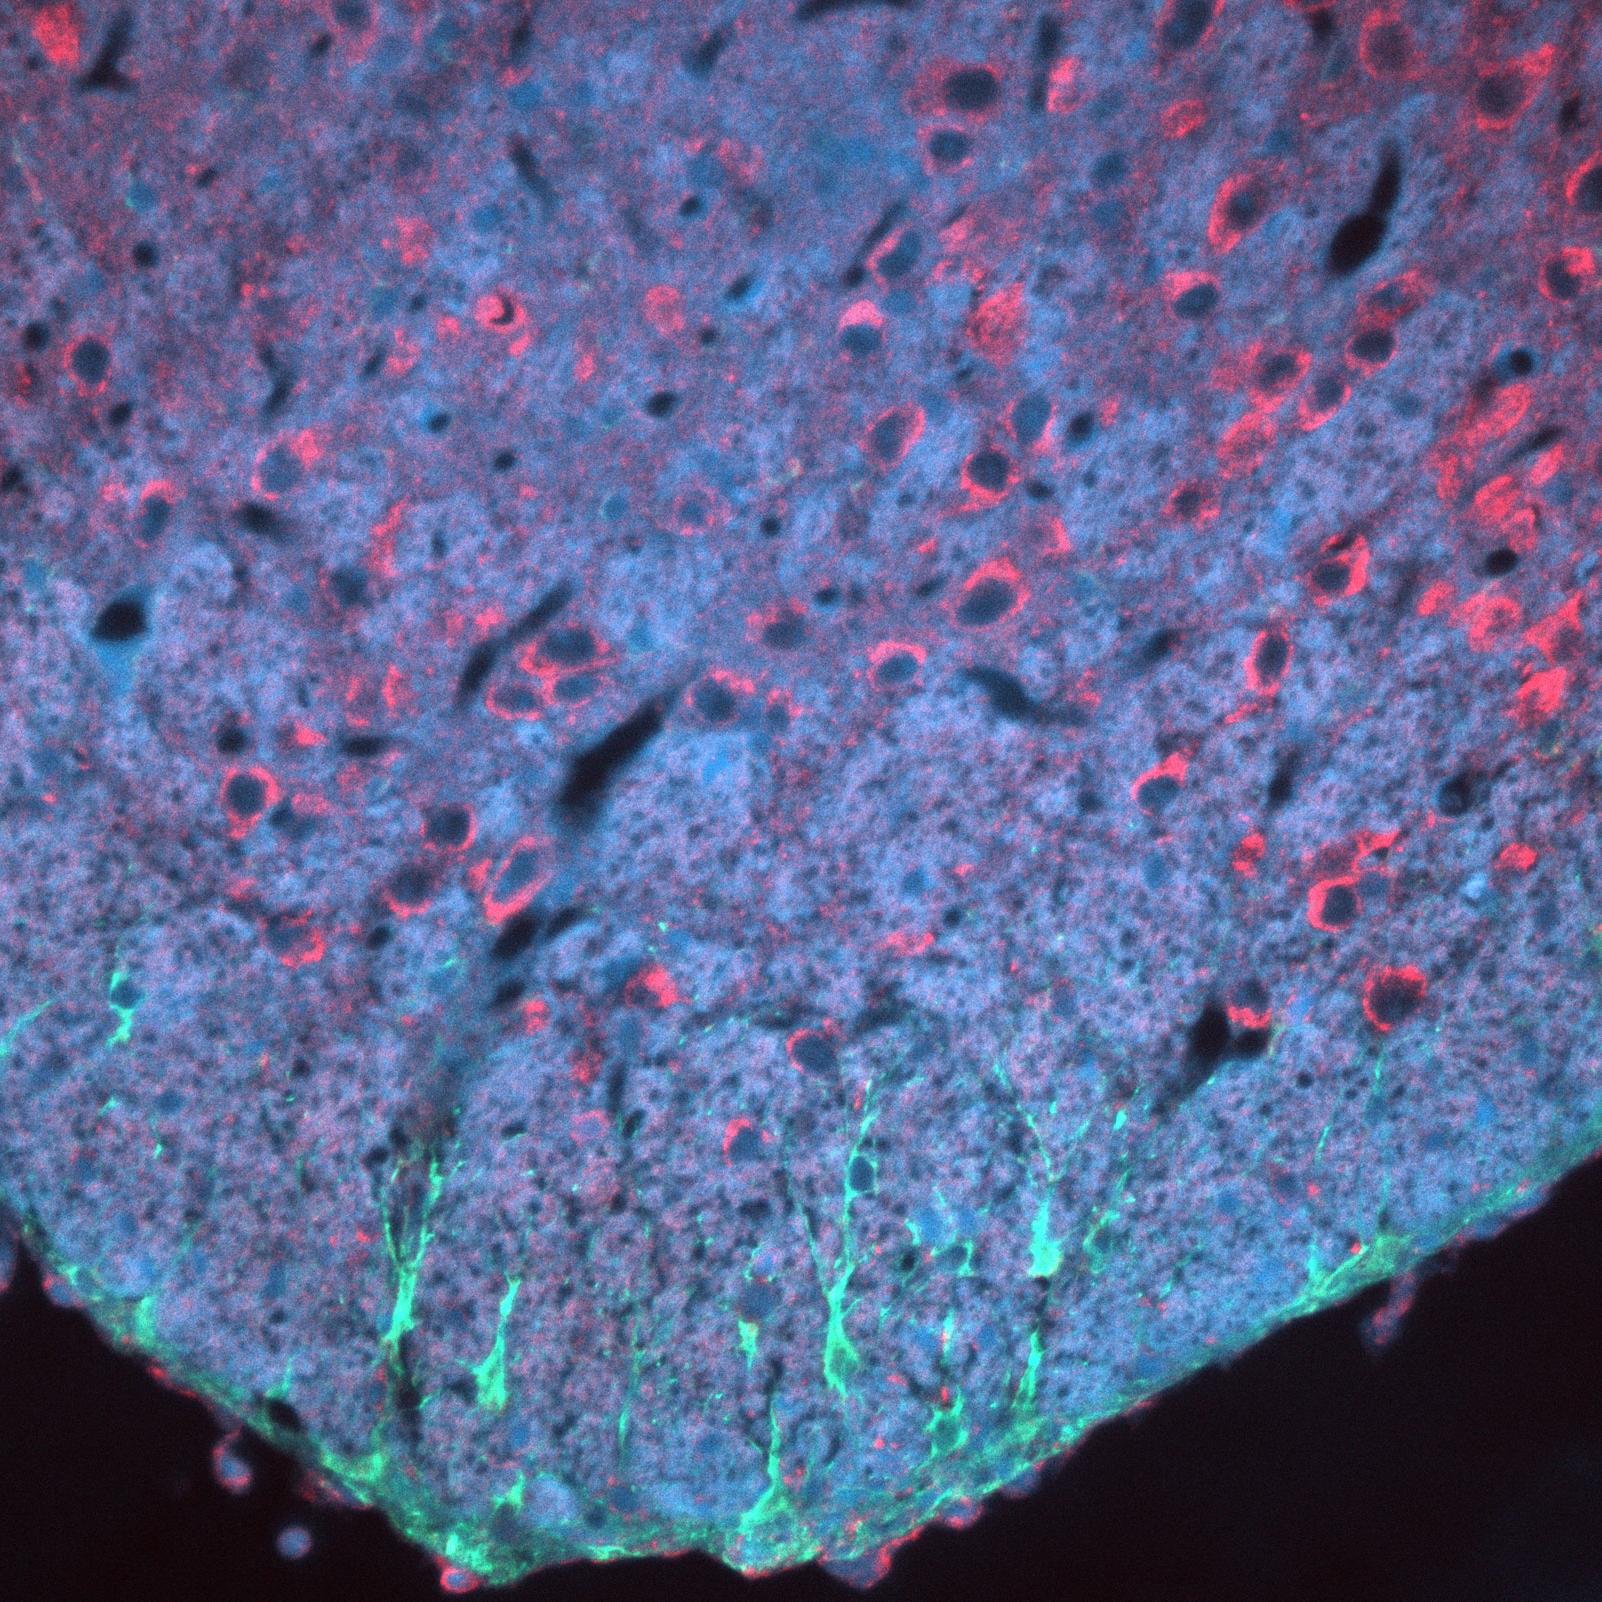 小鼠脑切片的抗体染色。细胞核（蓝色）、星形细胞（绿色）、细胞角蛋白（红色），使用蔡司Axio Imager采集，物镜：EC Plan-NEOFLUAR 20×/0.50